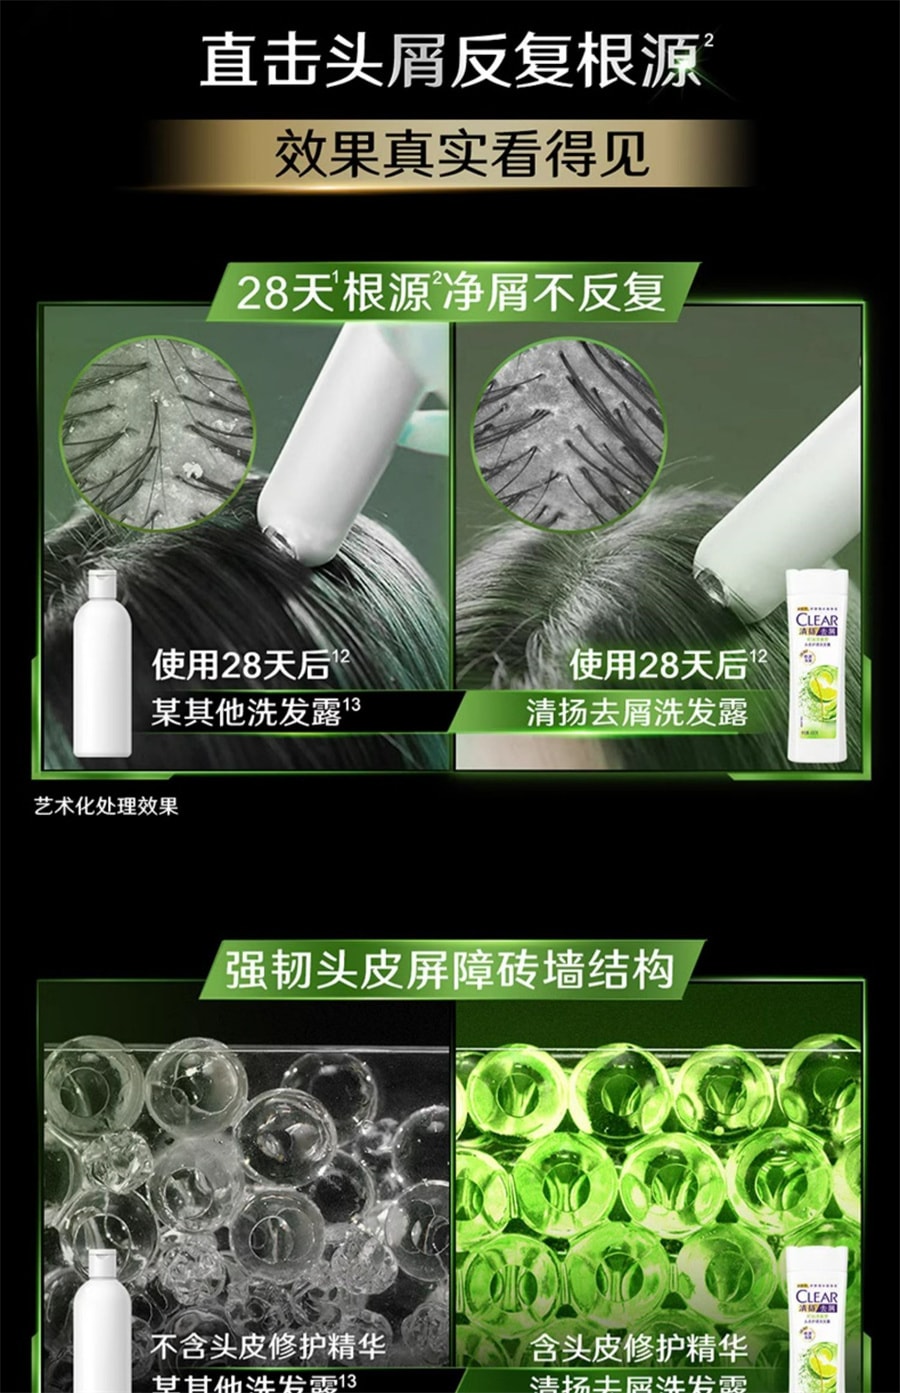 【中国直邮】清扬 5.5小蓝瓶氨基酸蓬松控油弱酸性洗发水露 500g